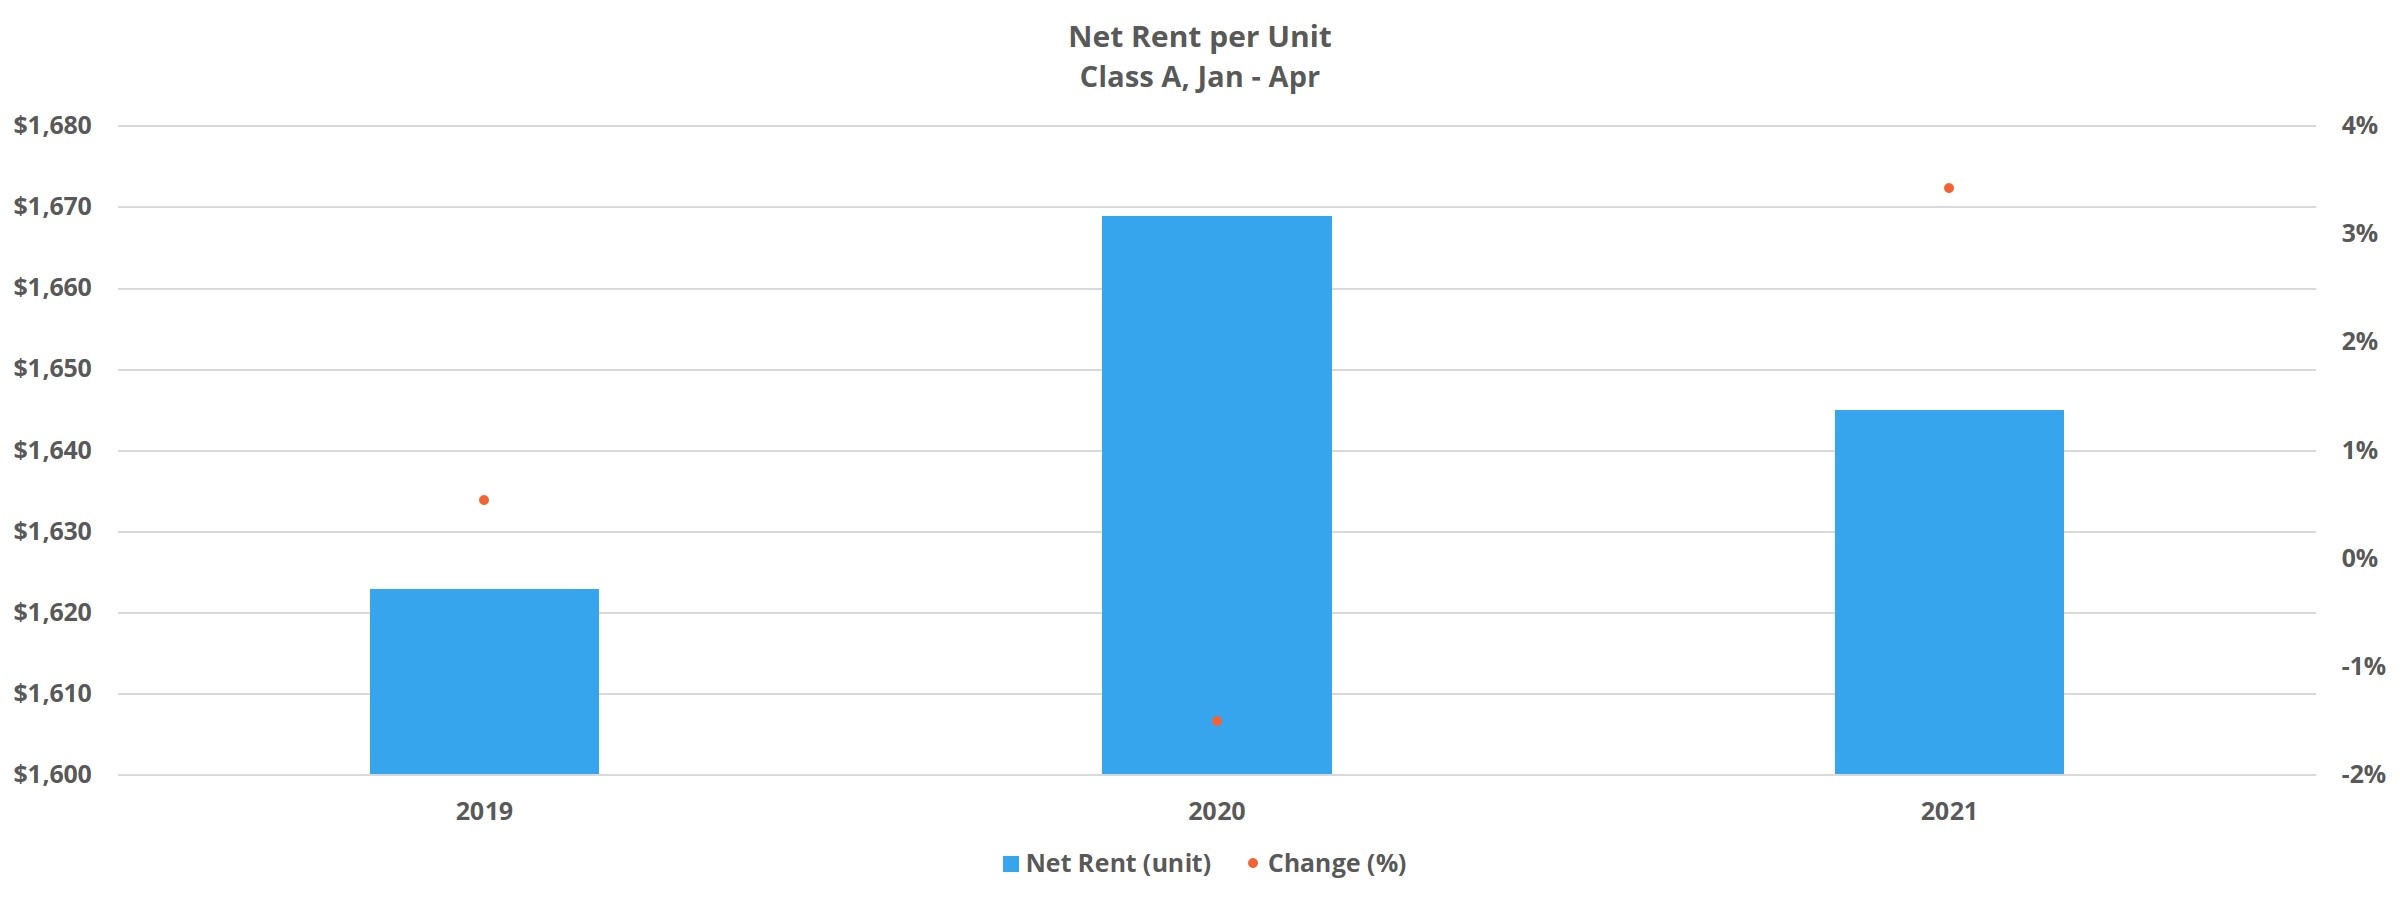 Net Rent per Unit